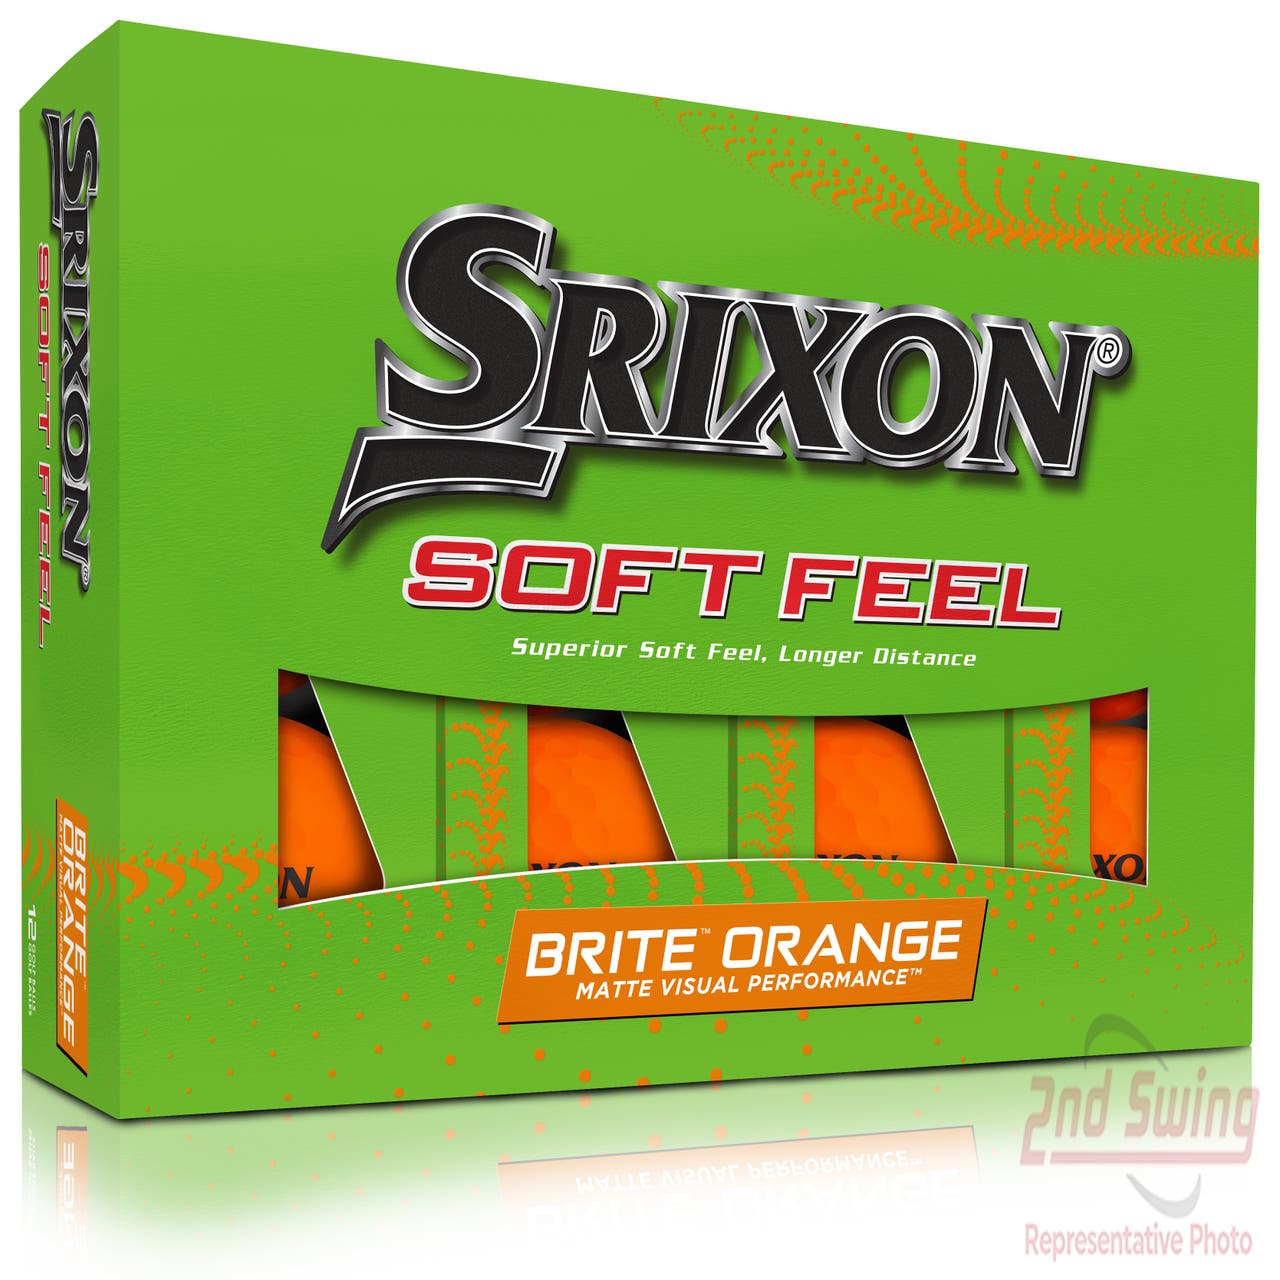 Srixon Soft Feel Brite Orange 13 Golf Balls